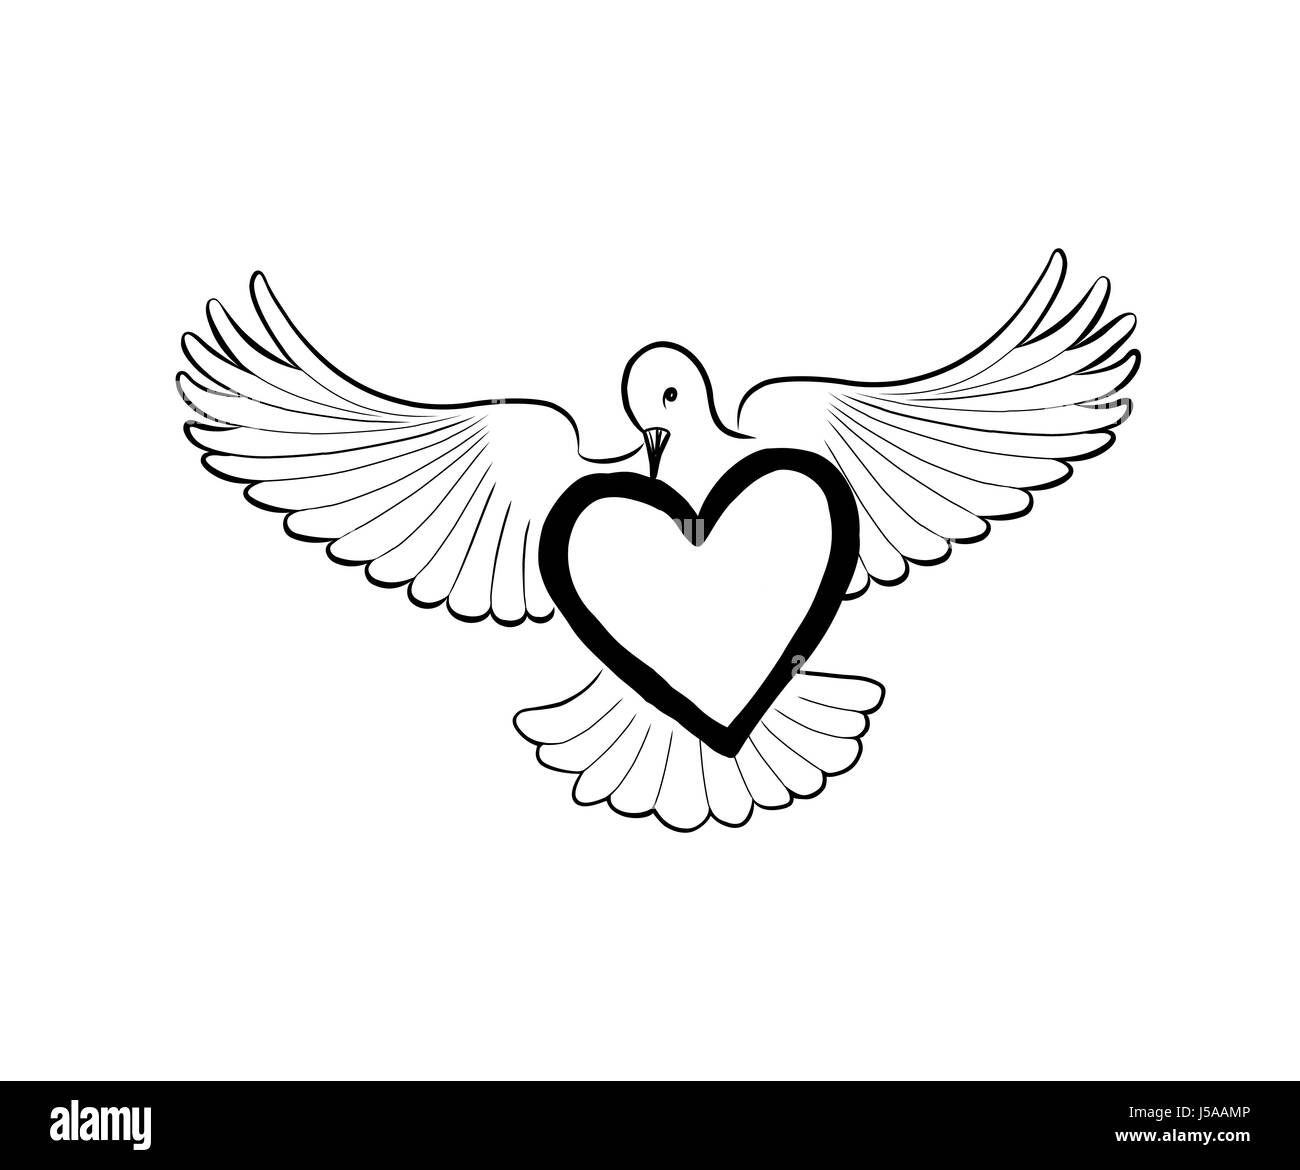 Coeur d'amour porté par flying bird dove. valentine day greeting concept. suite nuptiale mon signe. Illustration de Vecteur